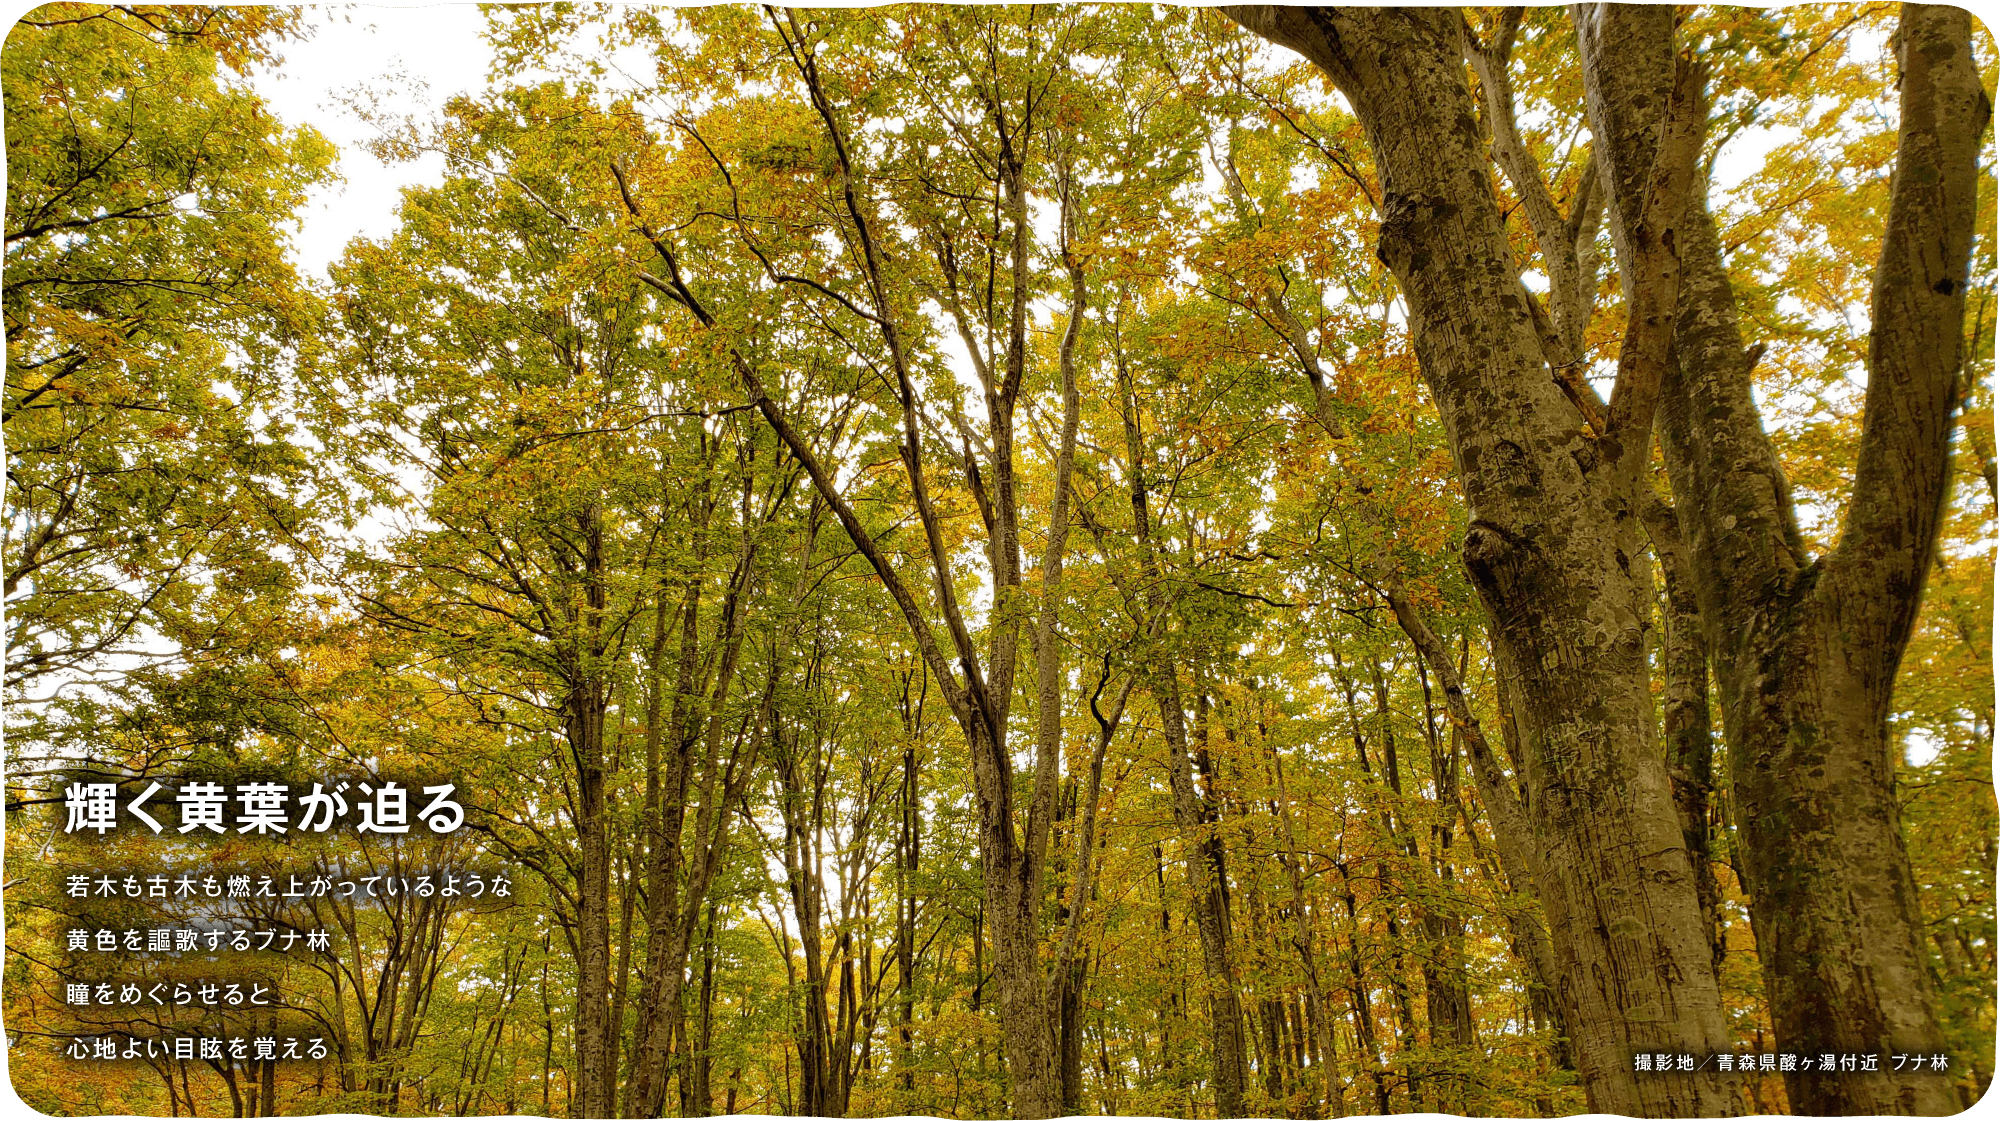 輝く黄葉が迫る　若木も古木も燃え上がっているような黄色を謳歌するブナ林瞳をめぐらせると心地よい目眩を覚える